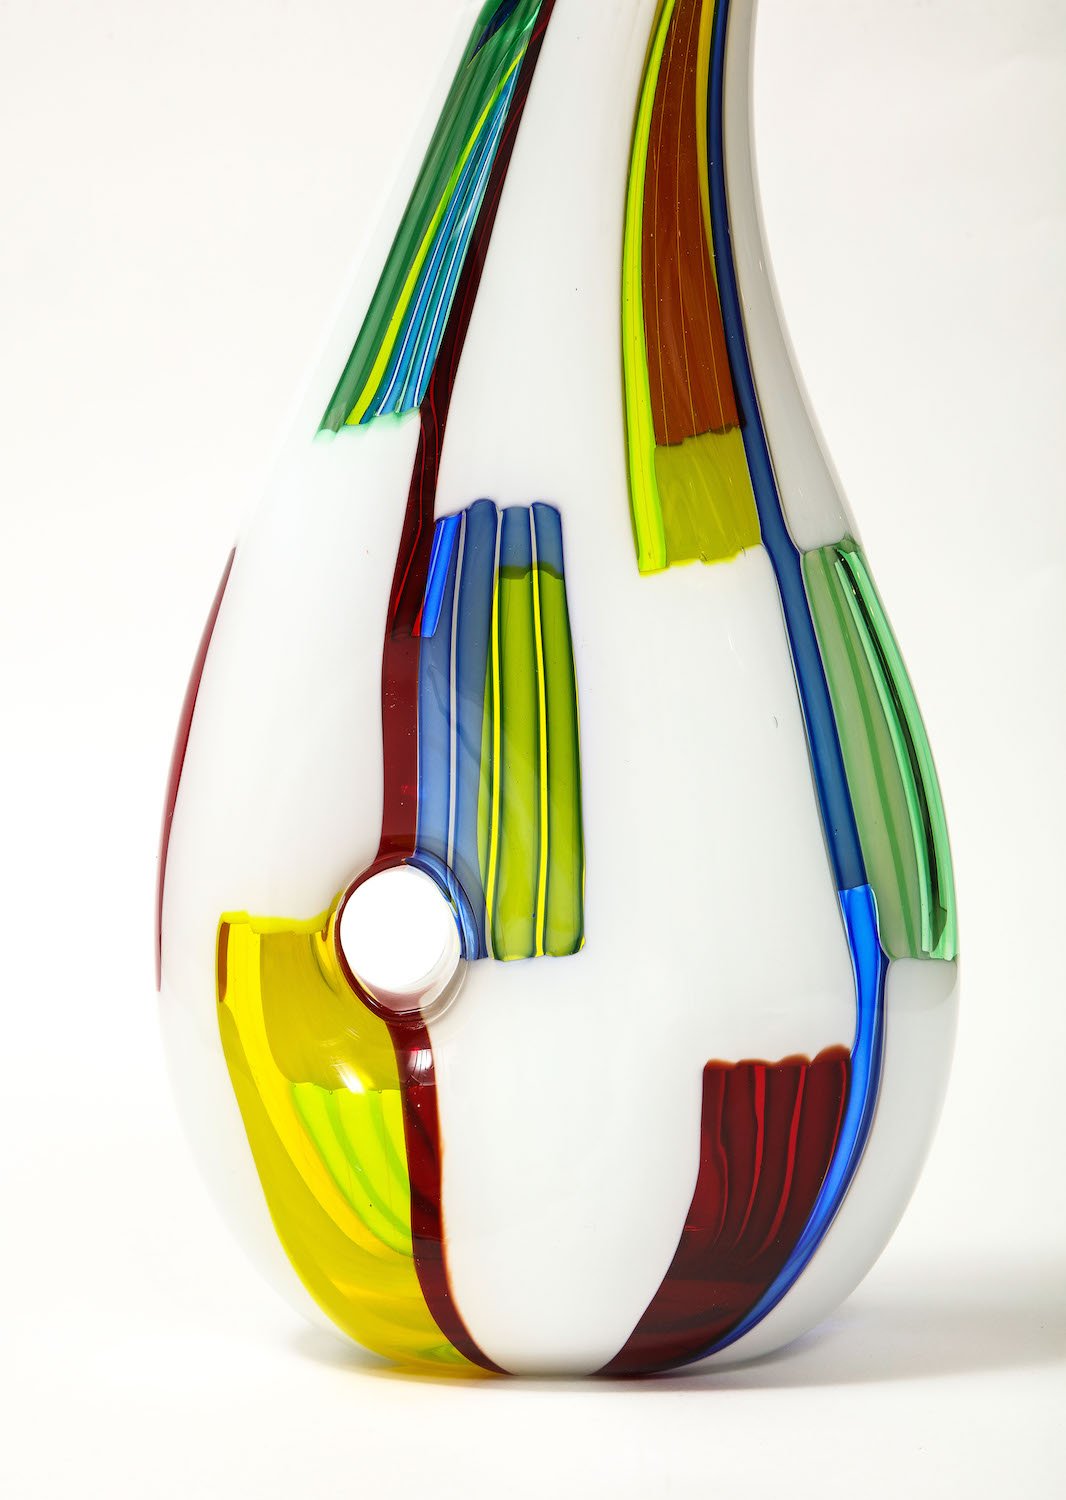 Rare "Bandiere" Vase By Anzolo Fuga for A.V.E.M.